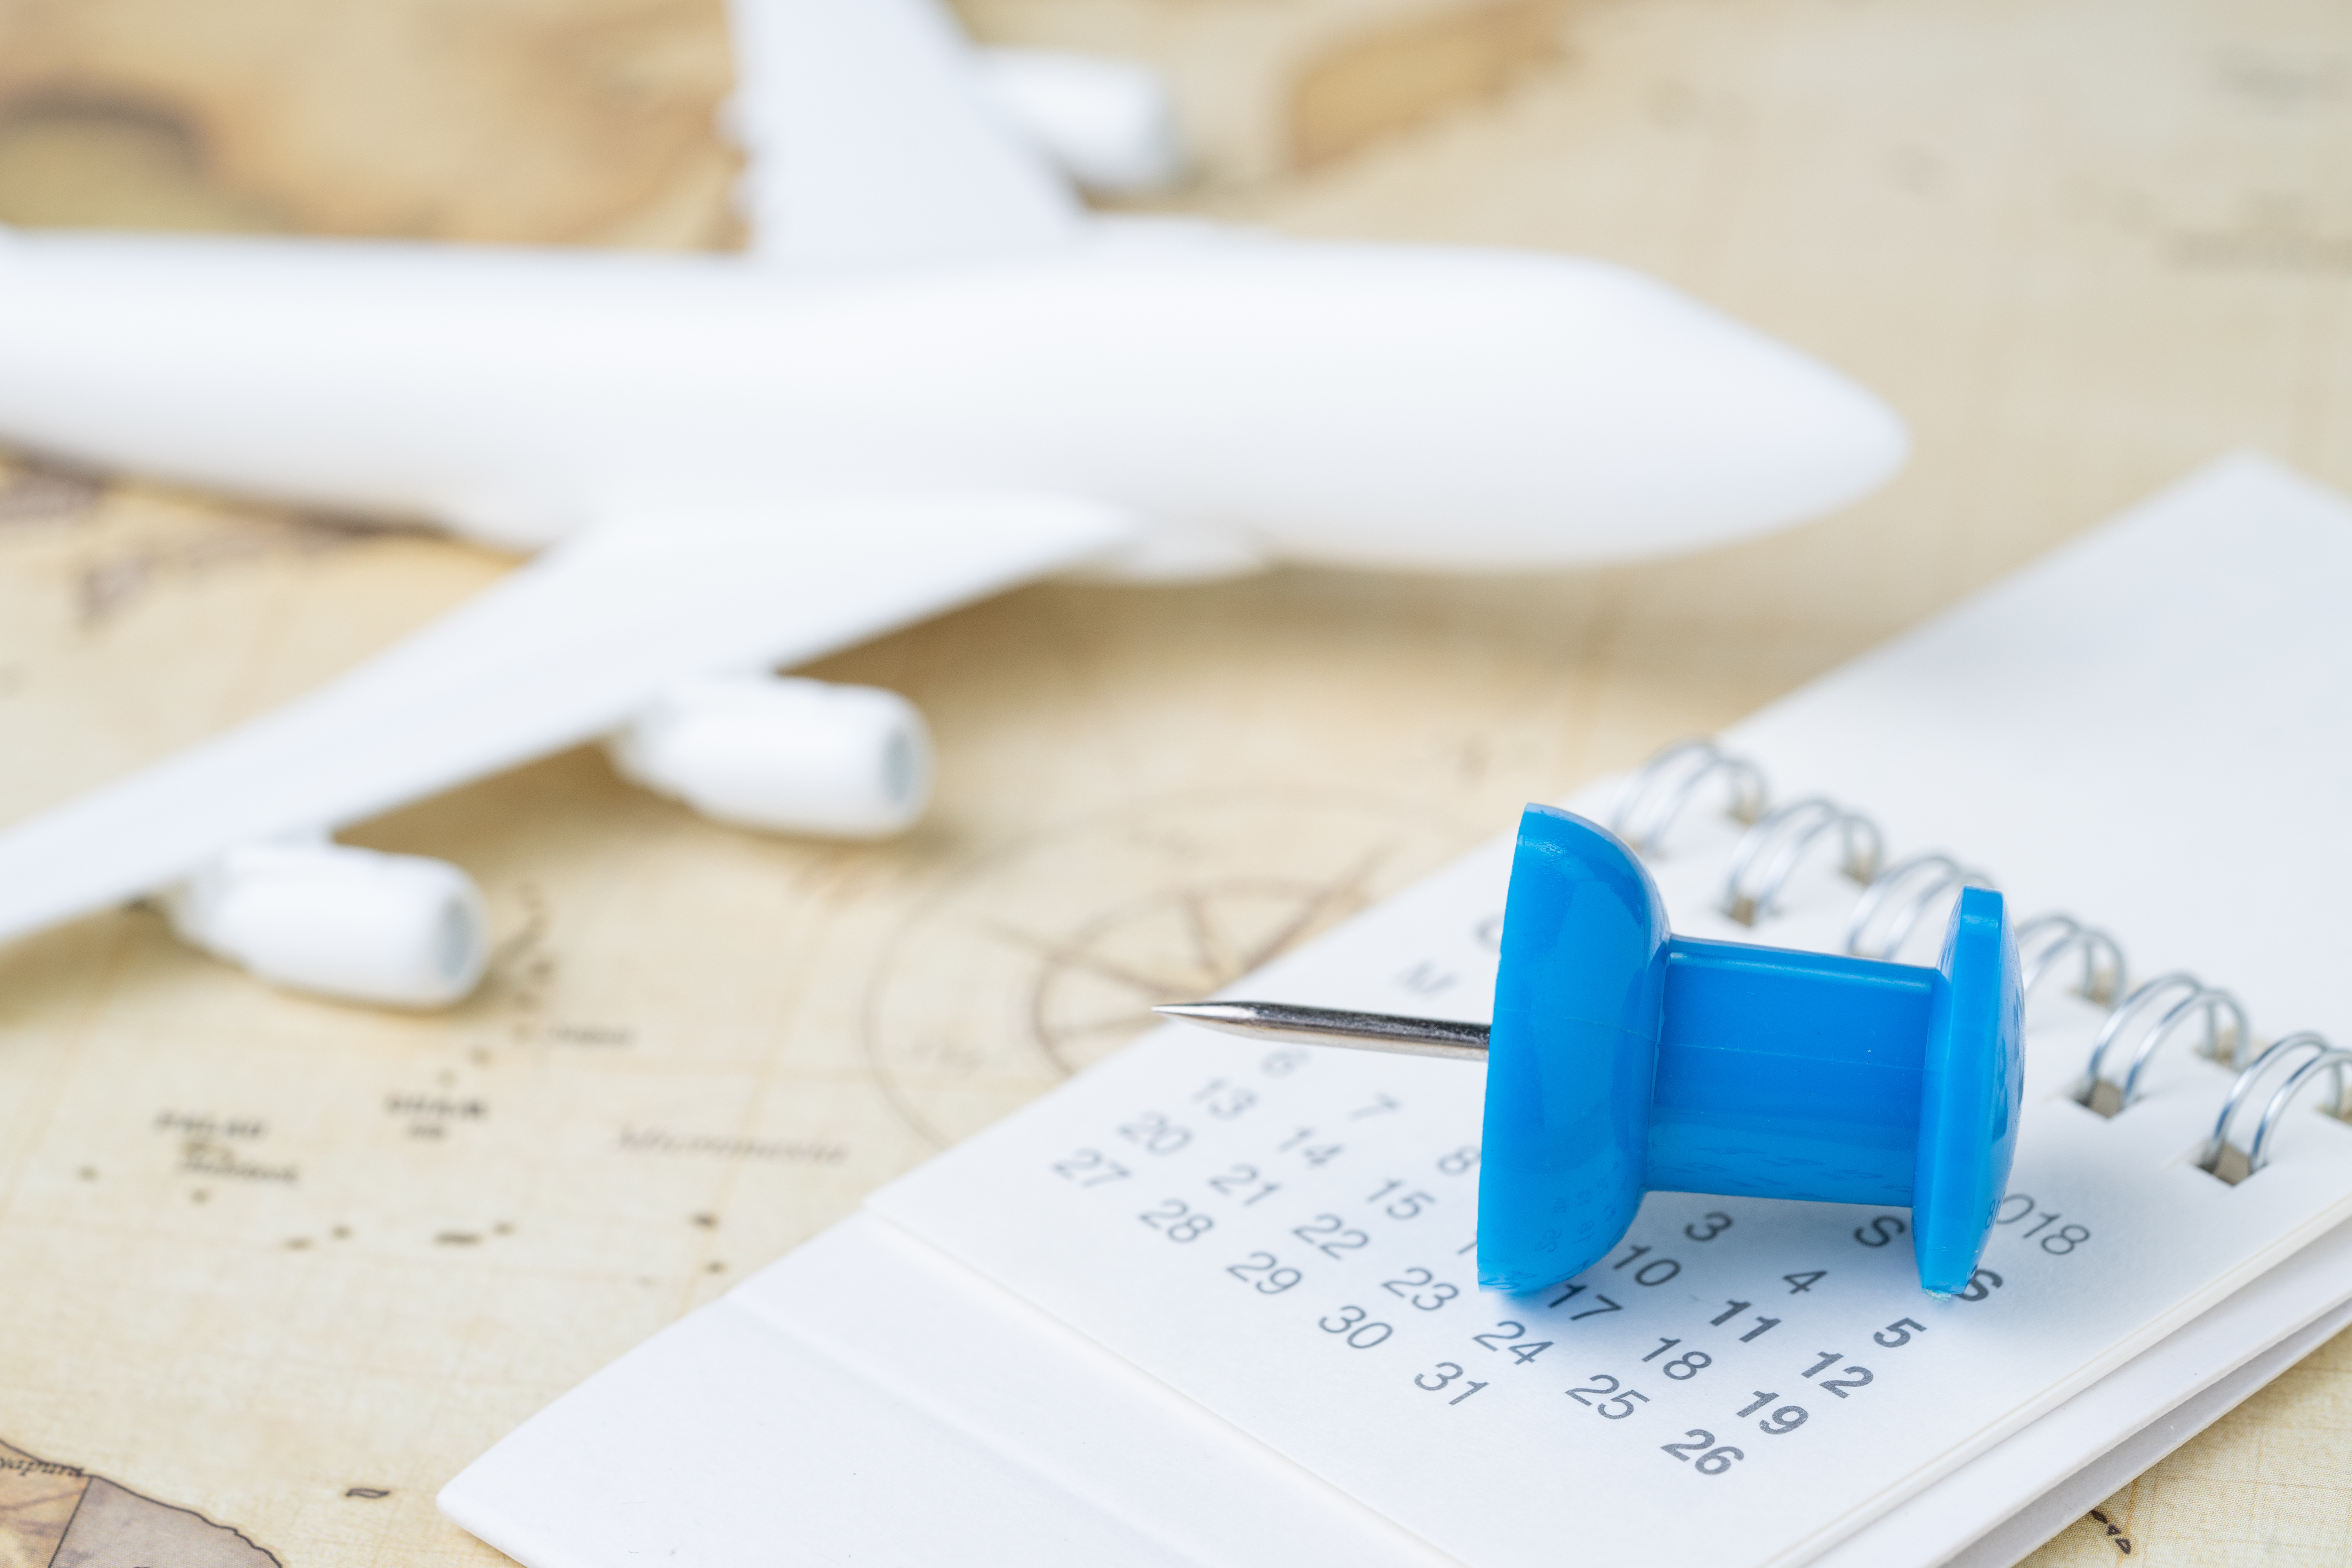 Open kalender met een blauwe speld in focus met een wazig modelvliegtuig op een kaart op de achtergrond